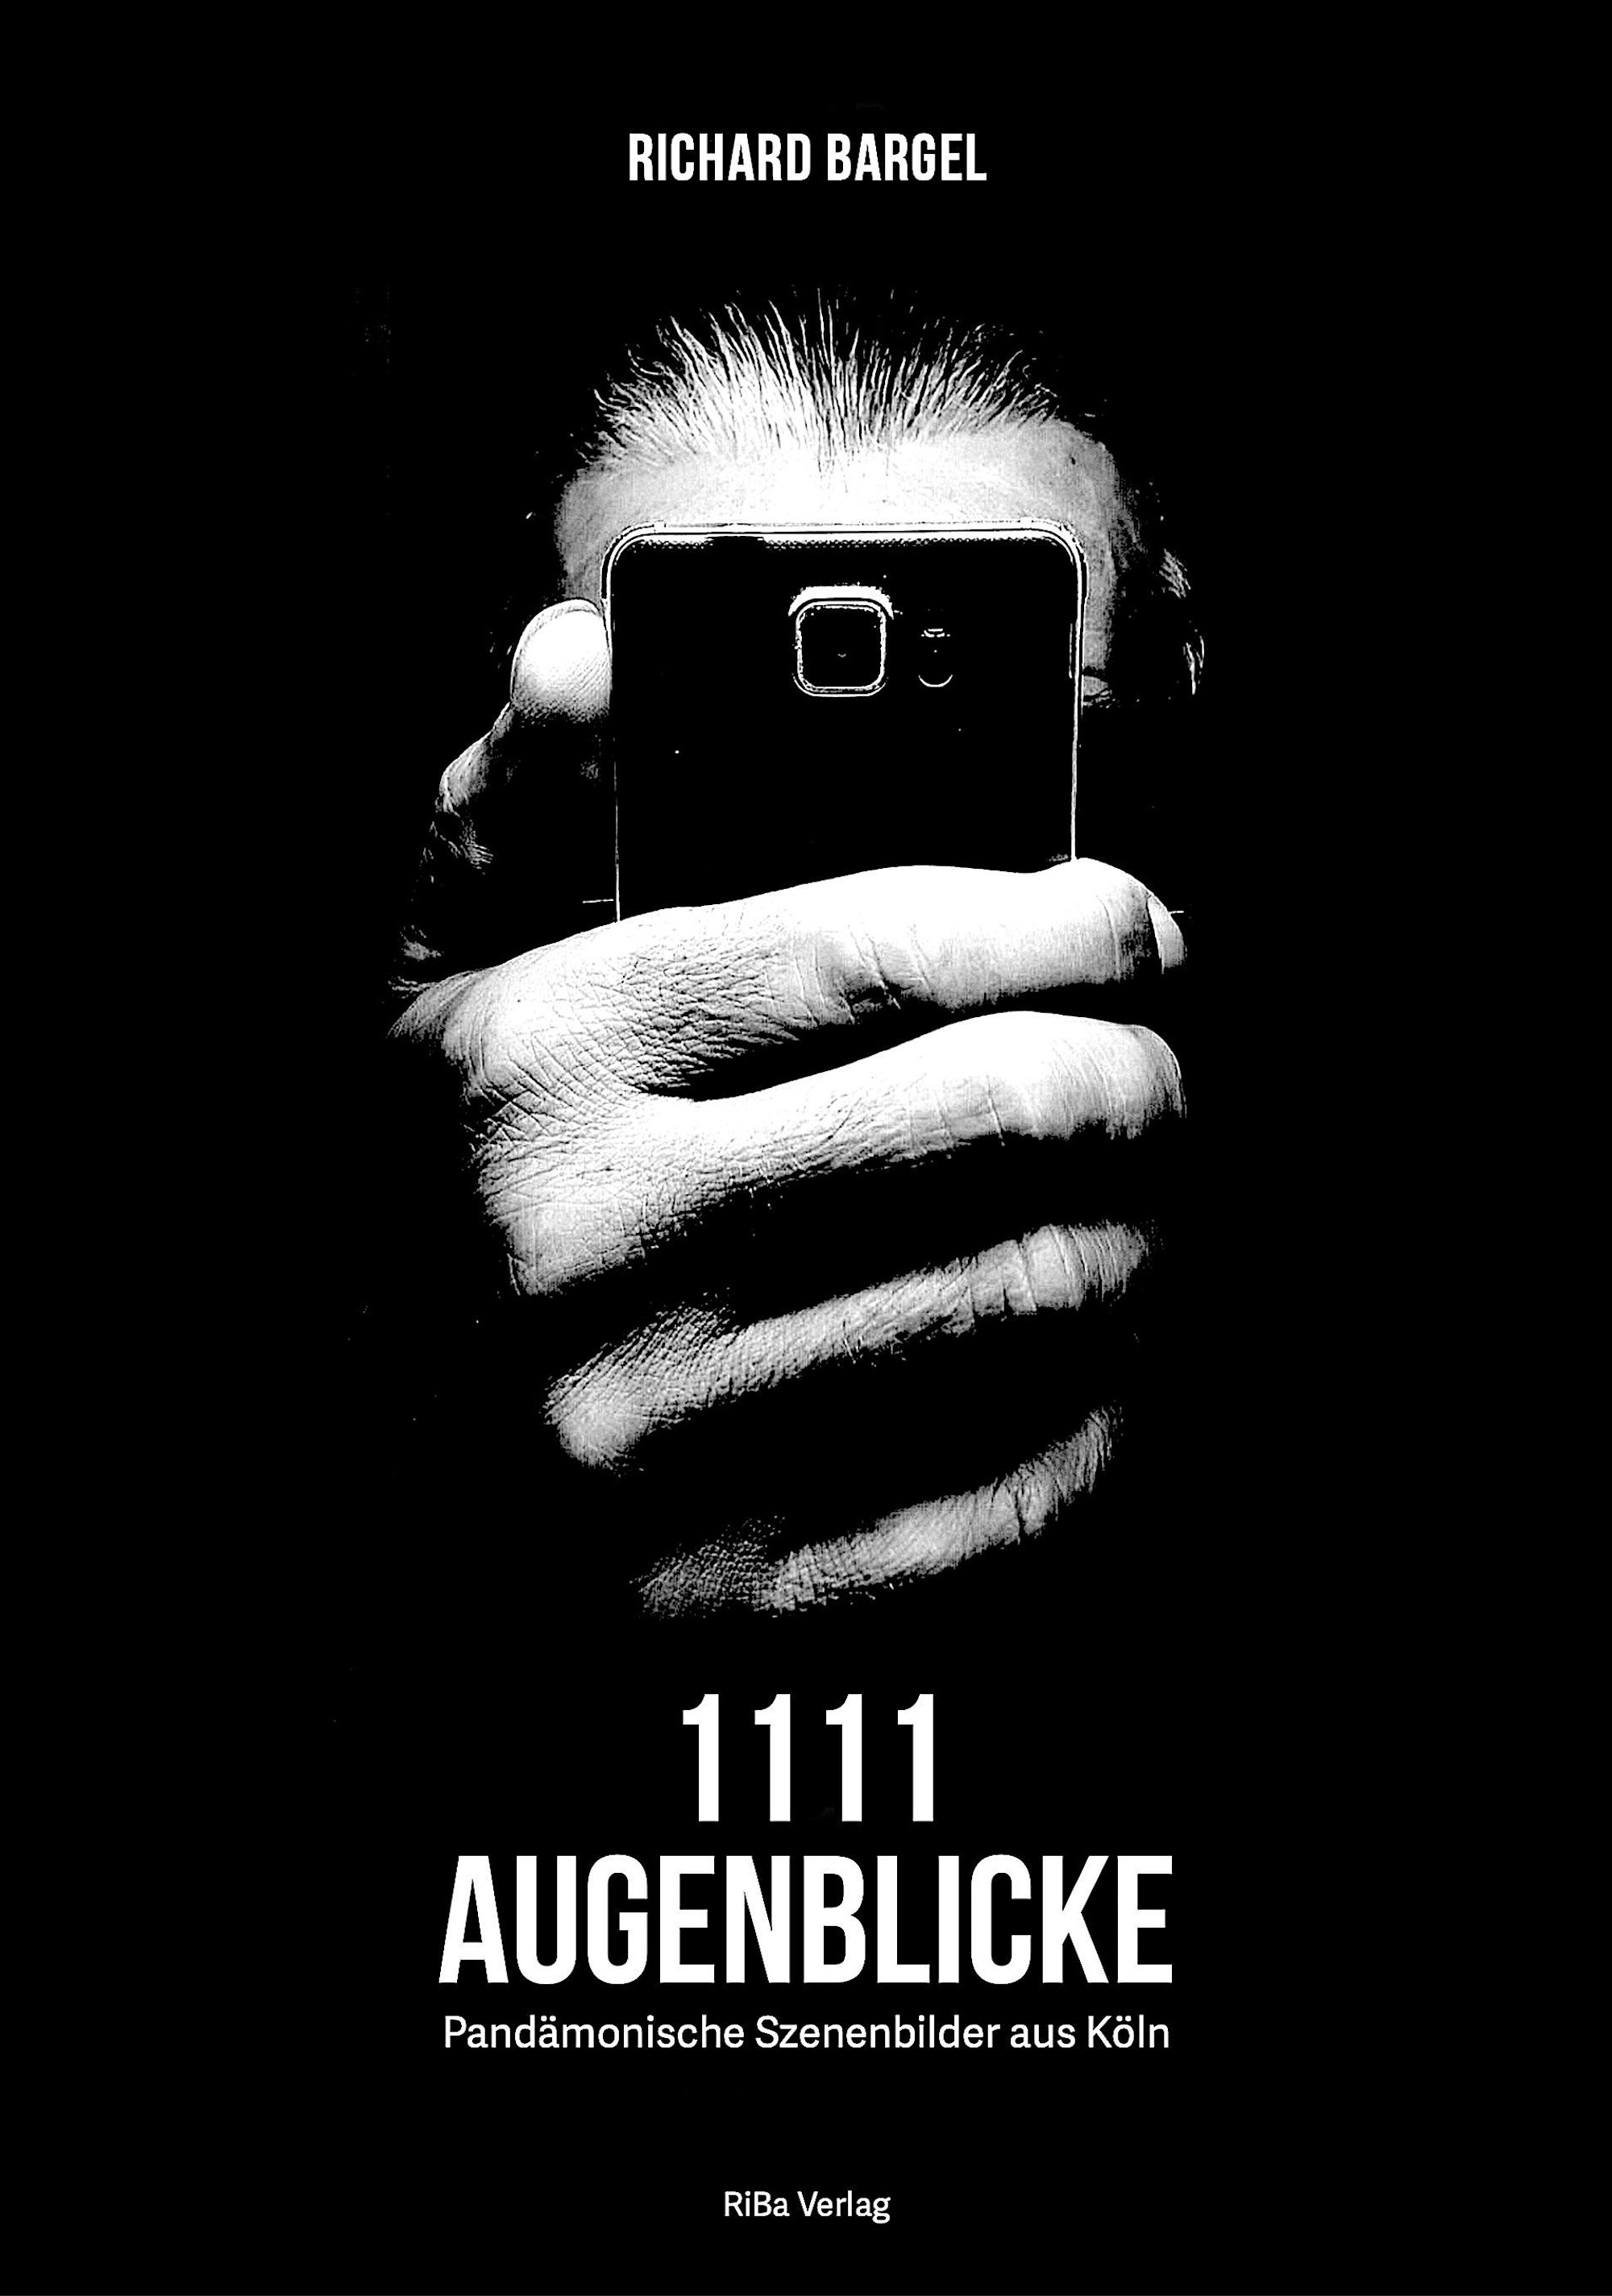 Das Cover der Fotobuches „1111 Augenblicke“ von Richard Bargel.